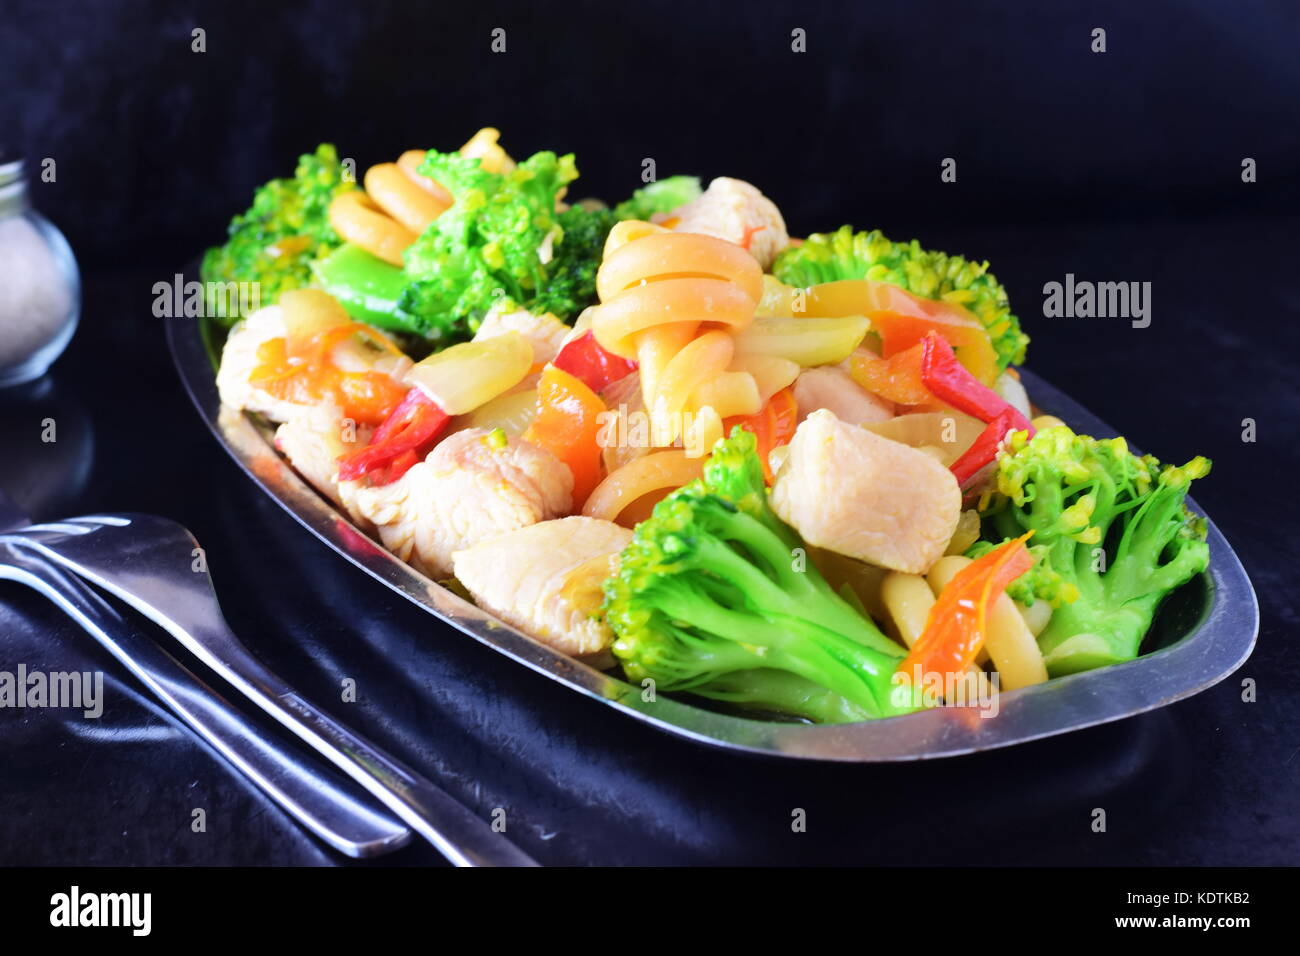 Filet de poulet sauté avec des légumes et des pâtes sur un plateau de métal sur un fond noir Banque D'Images